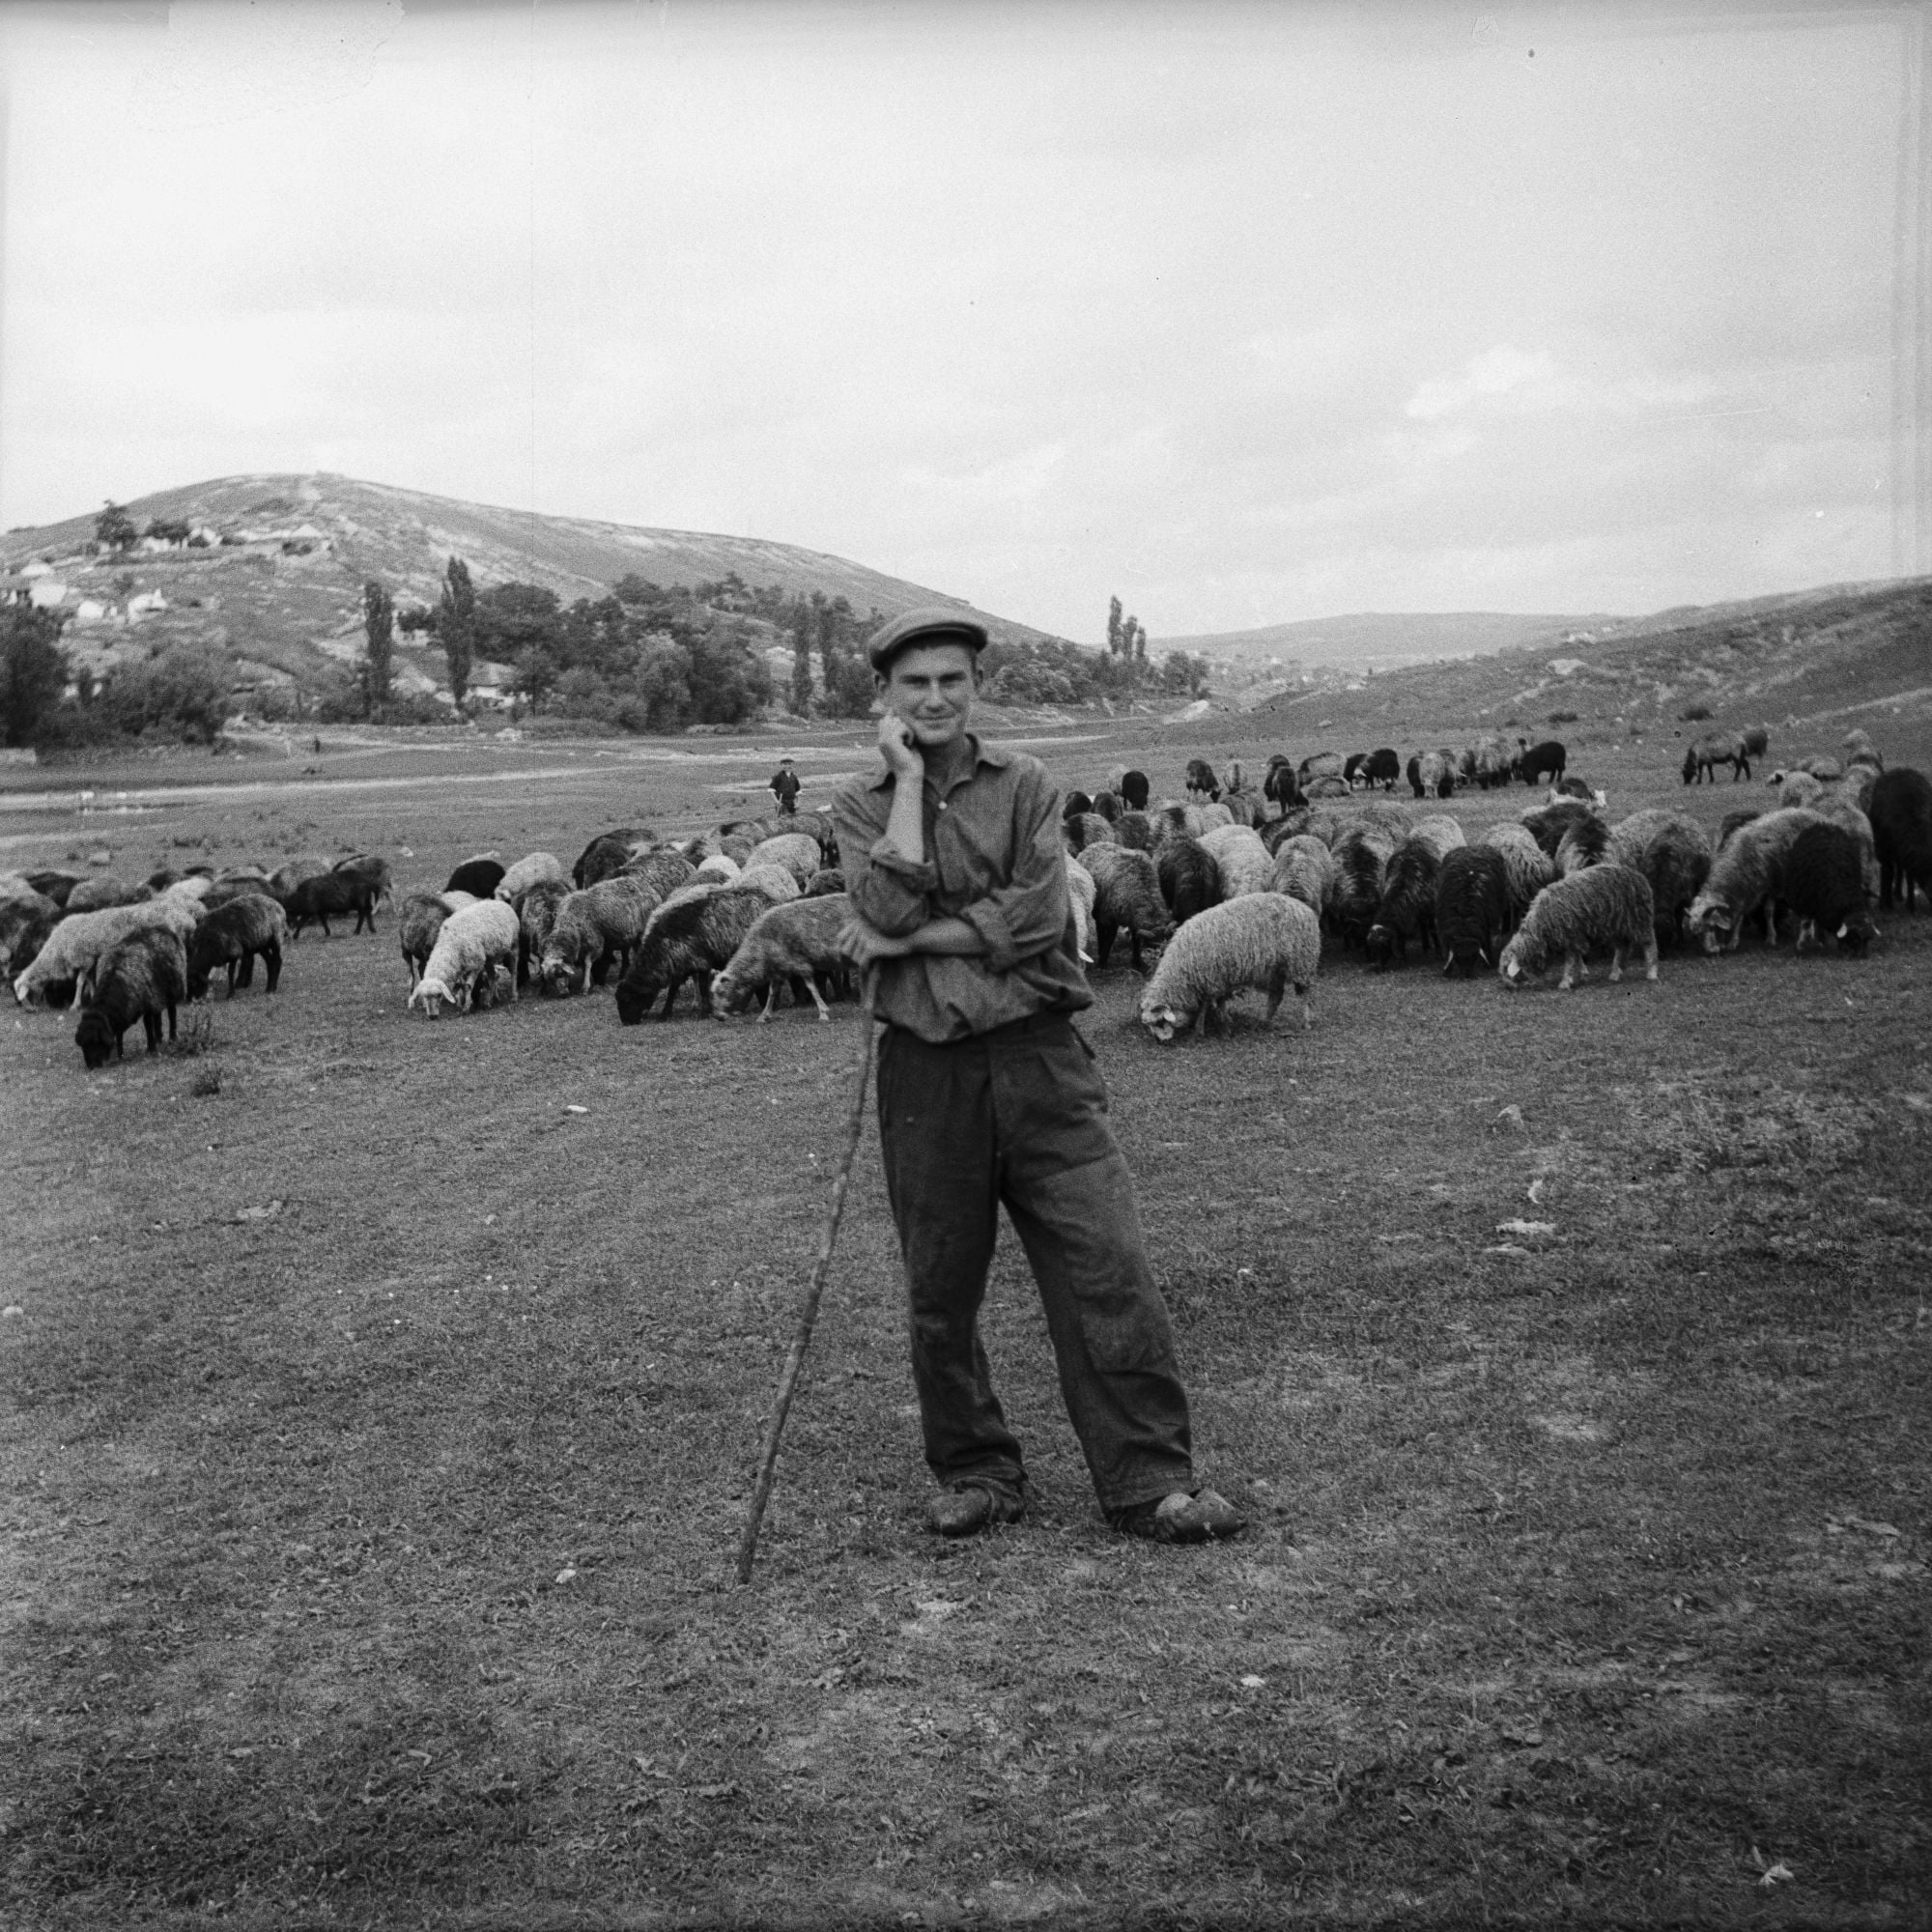 Czarno-biała fotografia  przedstawiająca mężczyznę z kijem w ręce. Za nim jest stado owiec oraz góry.